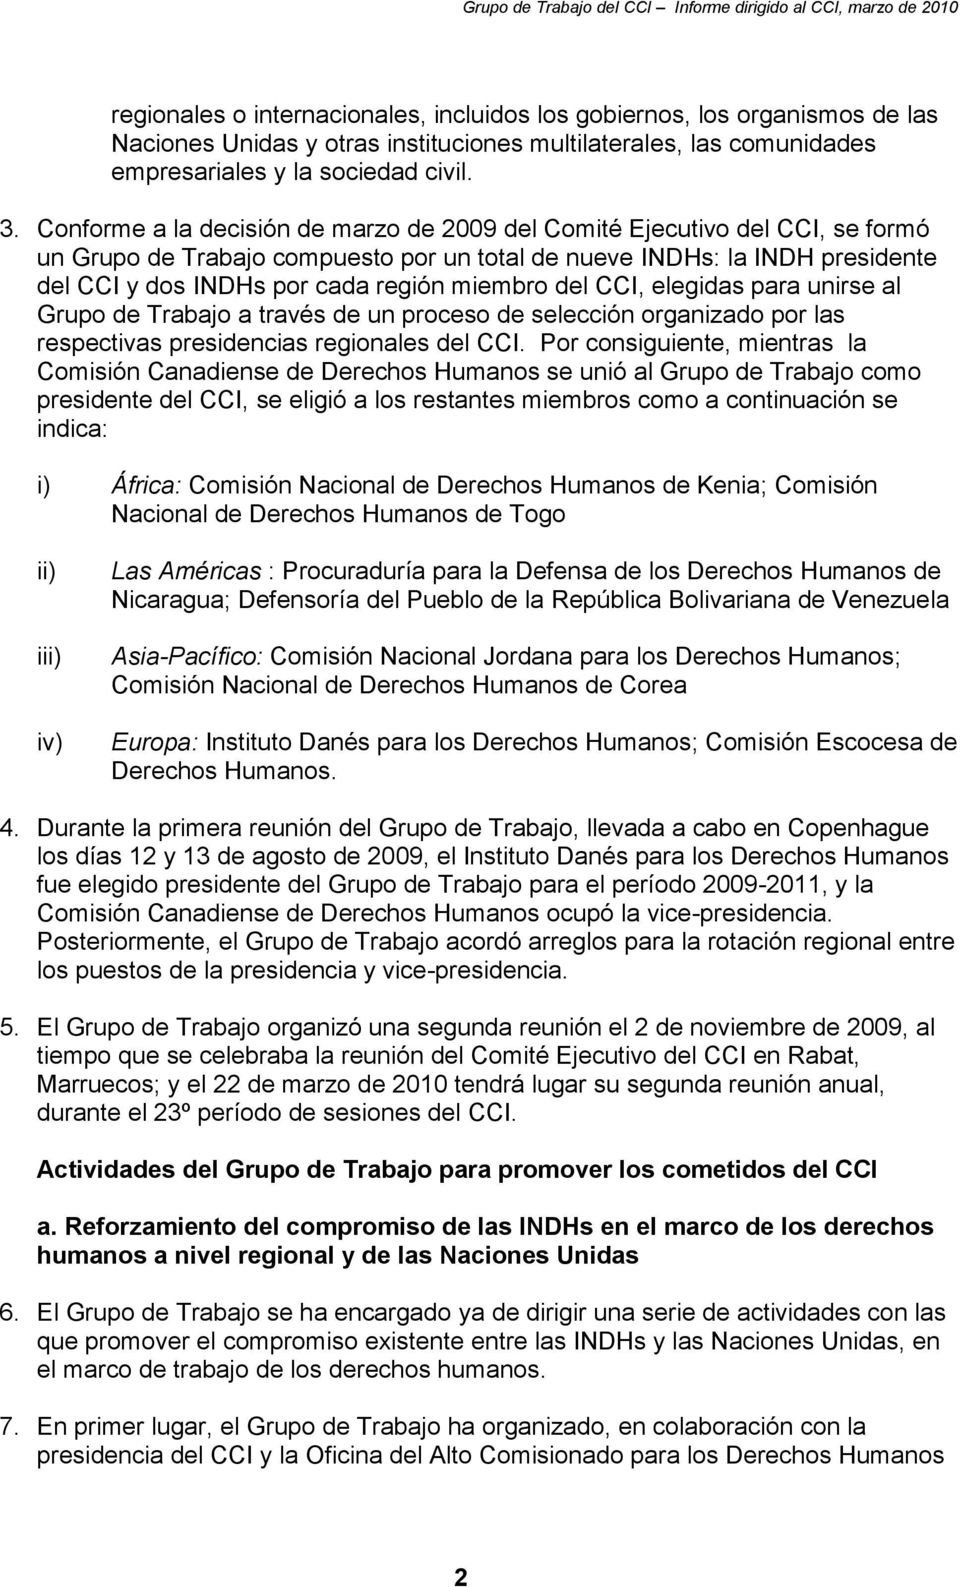 miembro del CCI, elegidas para unirse al Grupo de Trabajo a través de un proceso de selección organizado por las respectivas presidencias regionales del CCI.